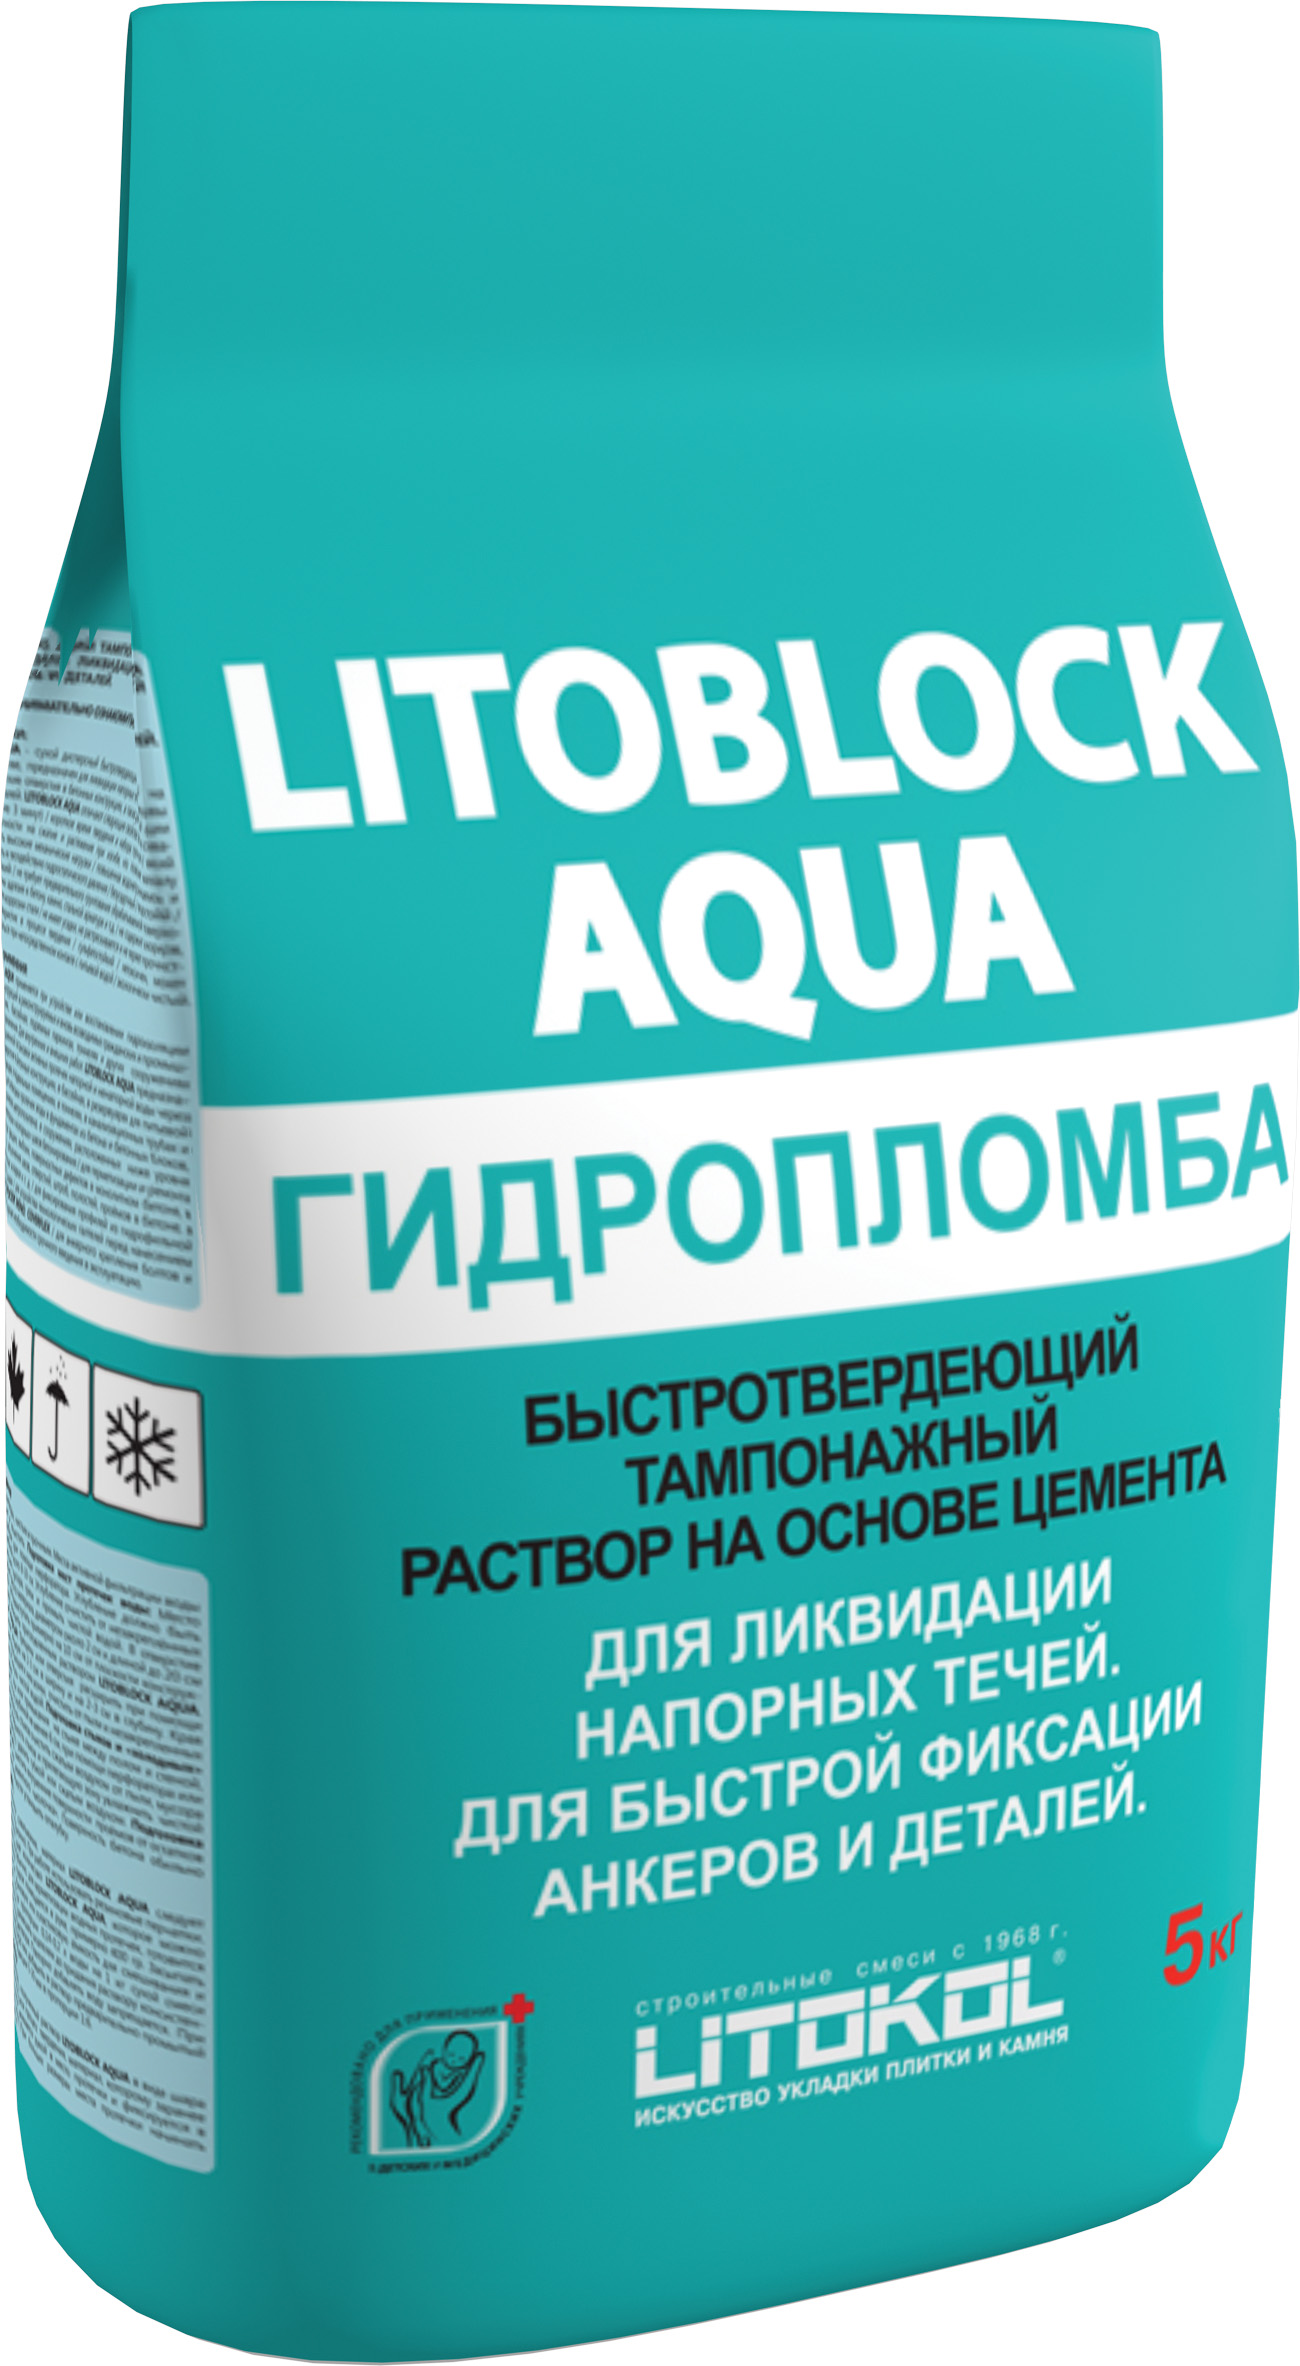 Гидроизоляция LITOBLOCK AQUA 5 серия Гидроизоляции Litokol